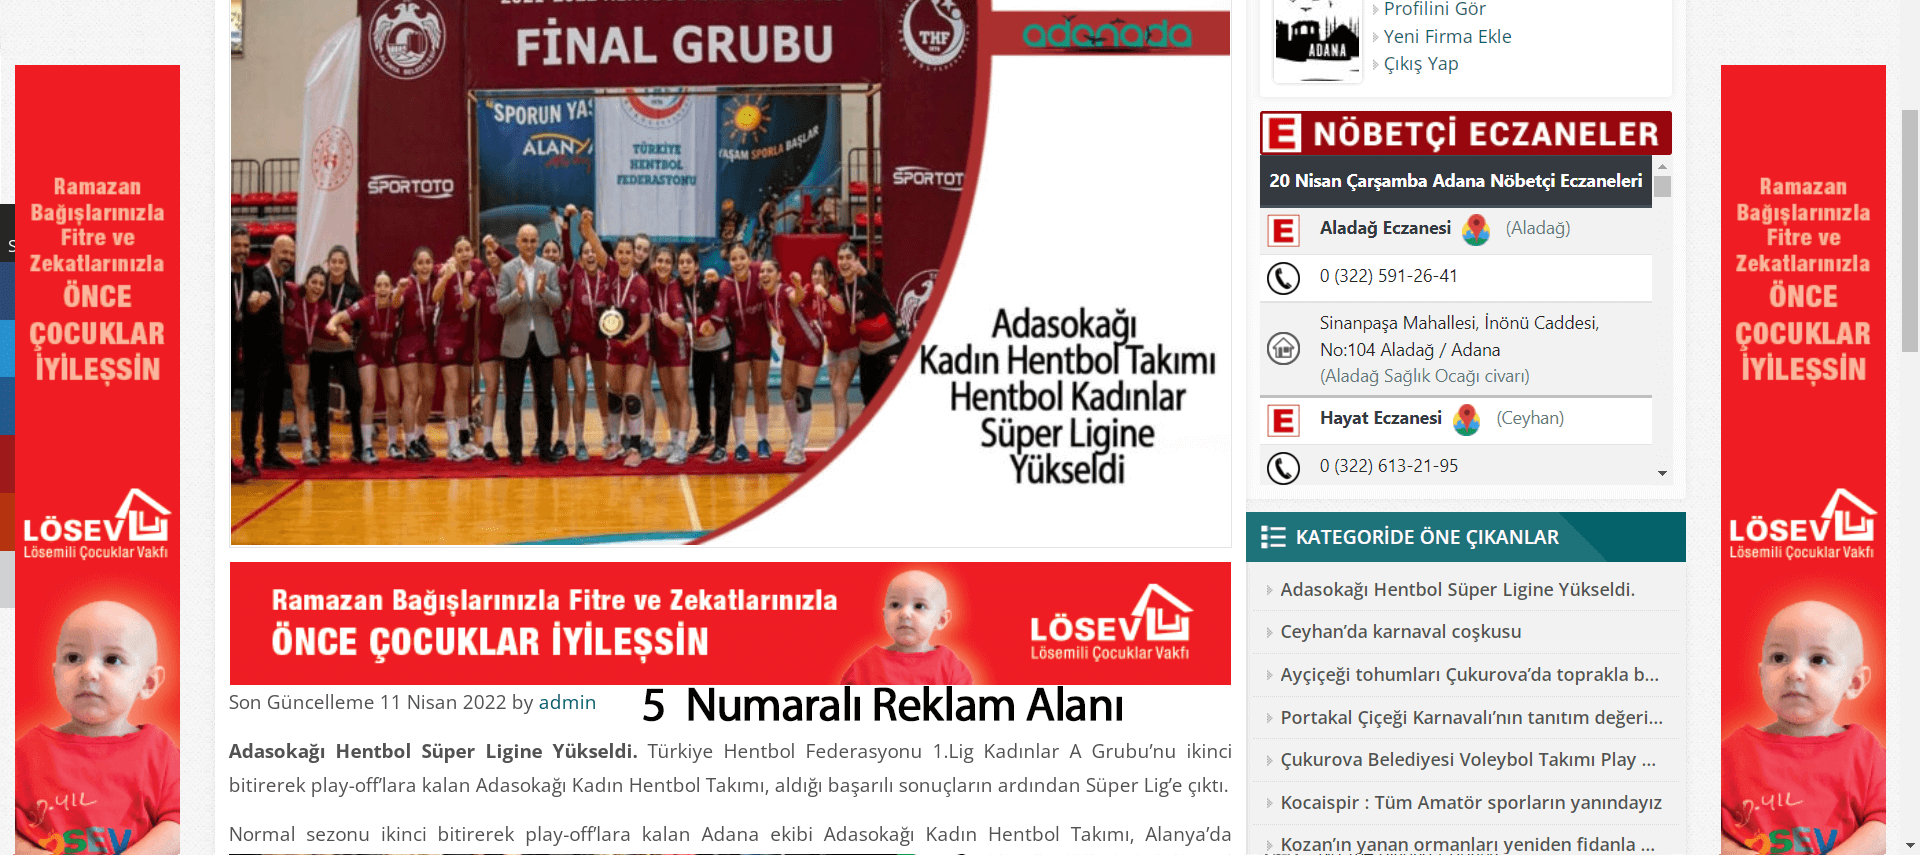 Adanada.NET Reklam Alanı